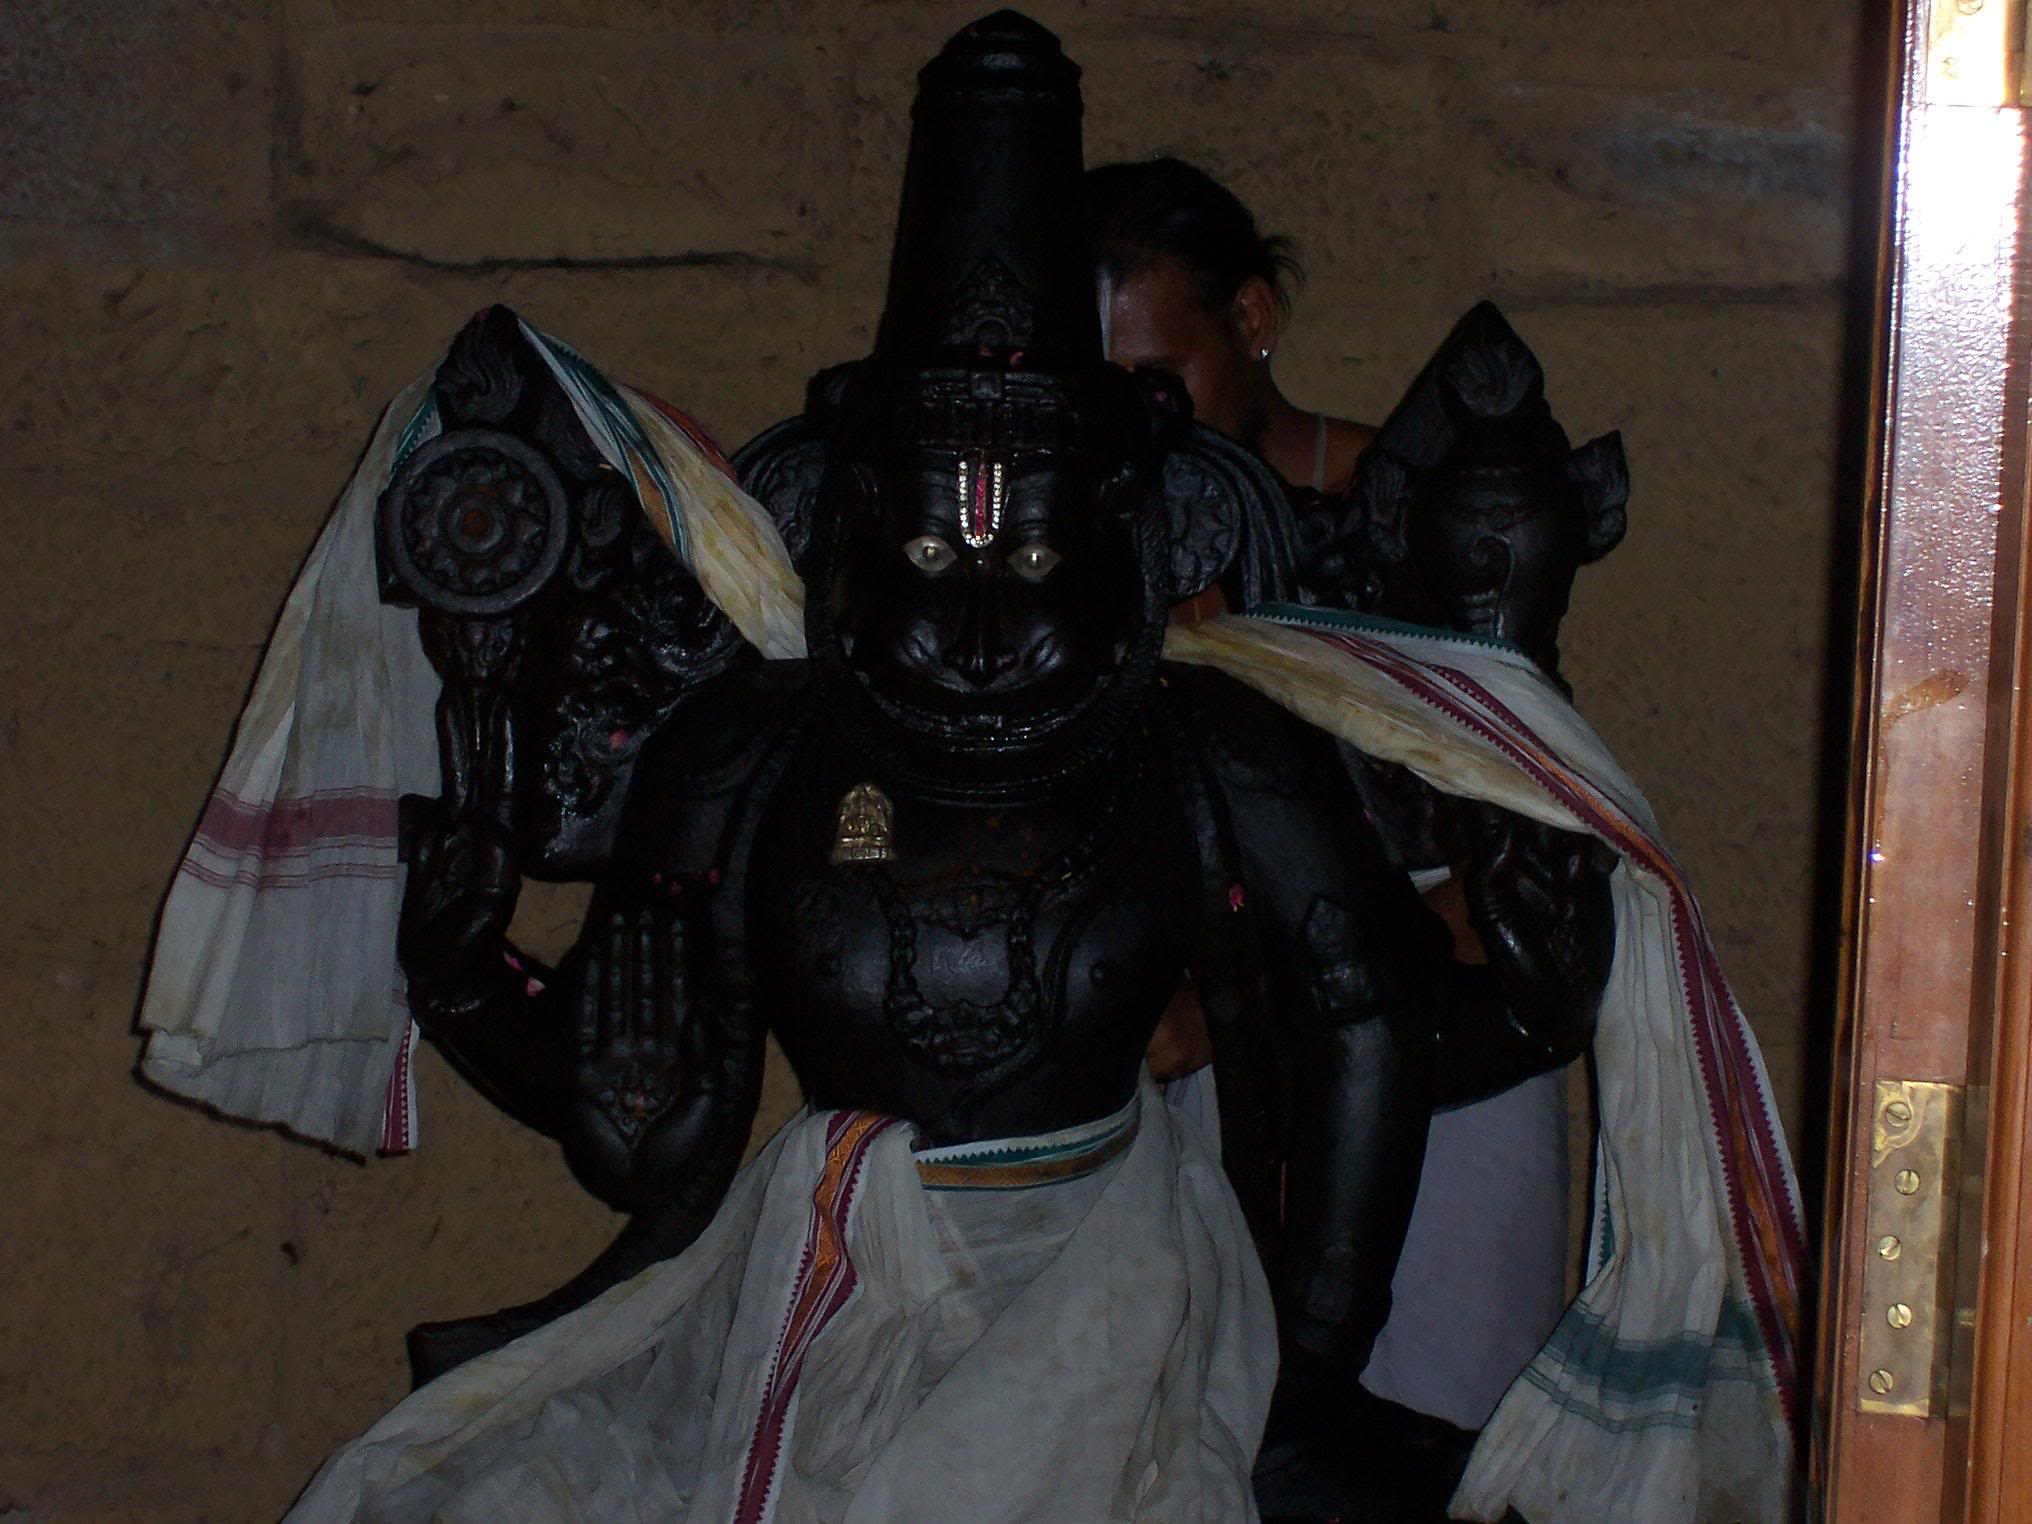 Bidar Jharani Narasimha Swamy Cave Temple